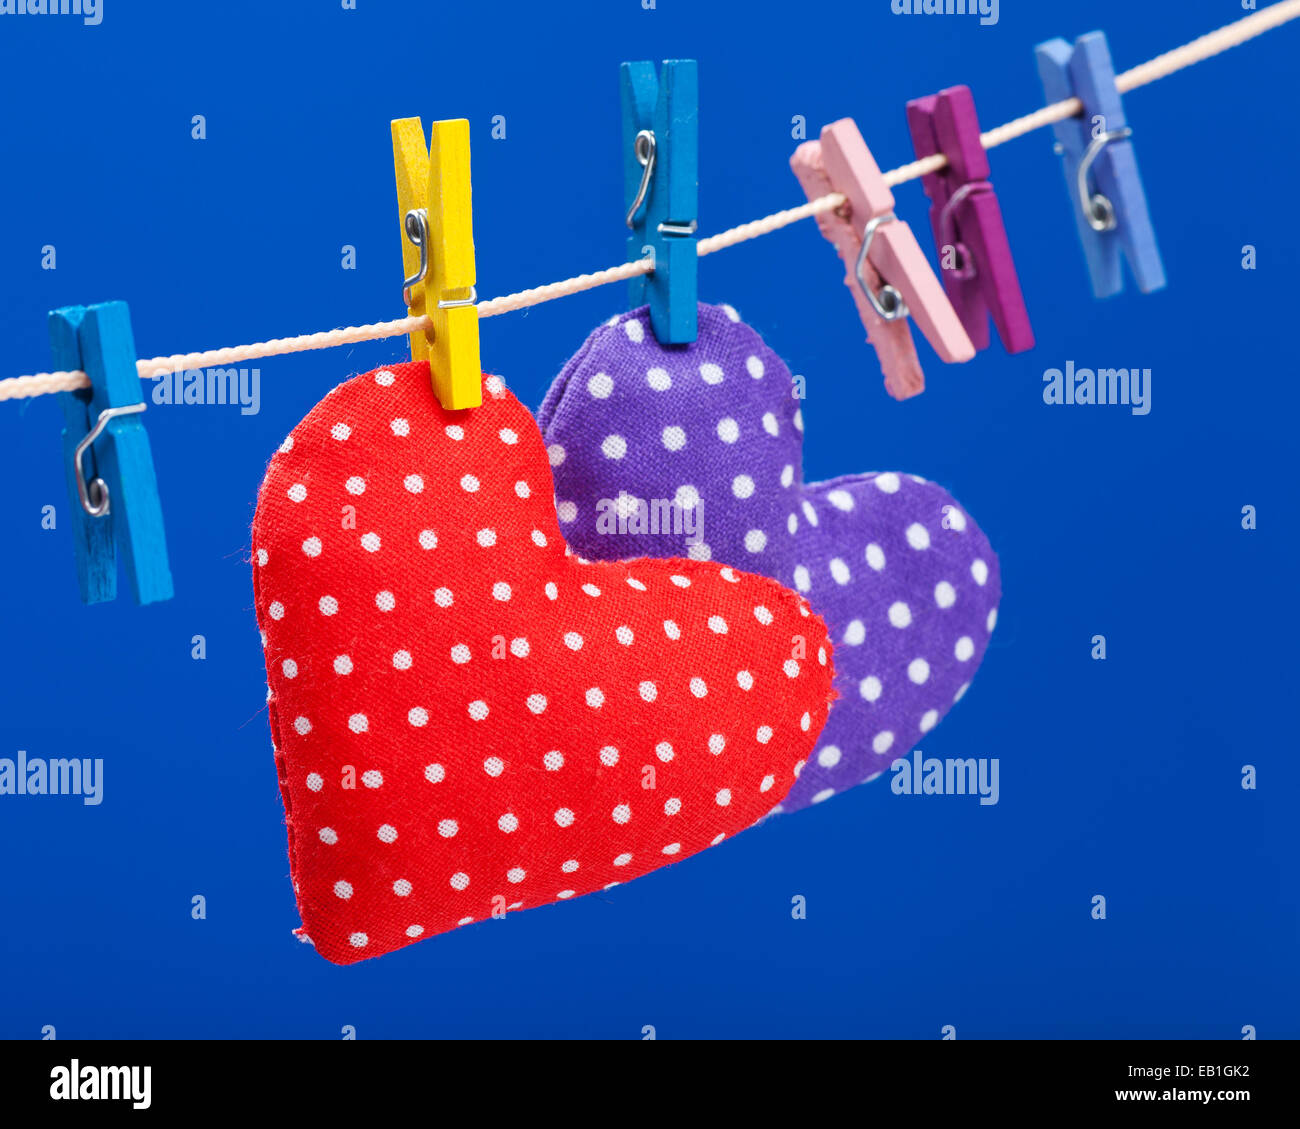 zwei Herzen hängen an einer Wäscheleine mit Wäscheklammern, konzentrieren sich auf rot. Blauer Hintergrund Stockfoto